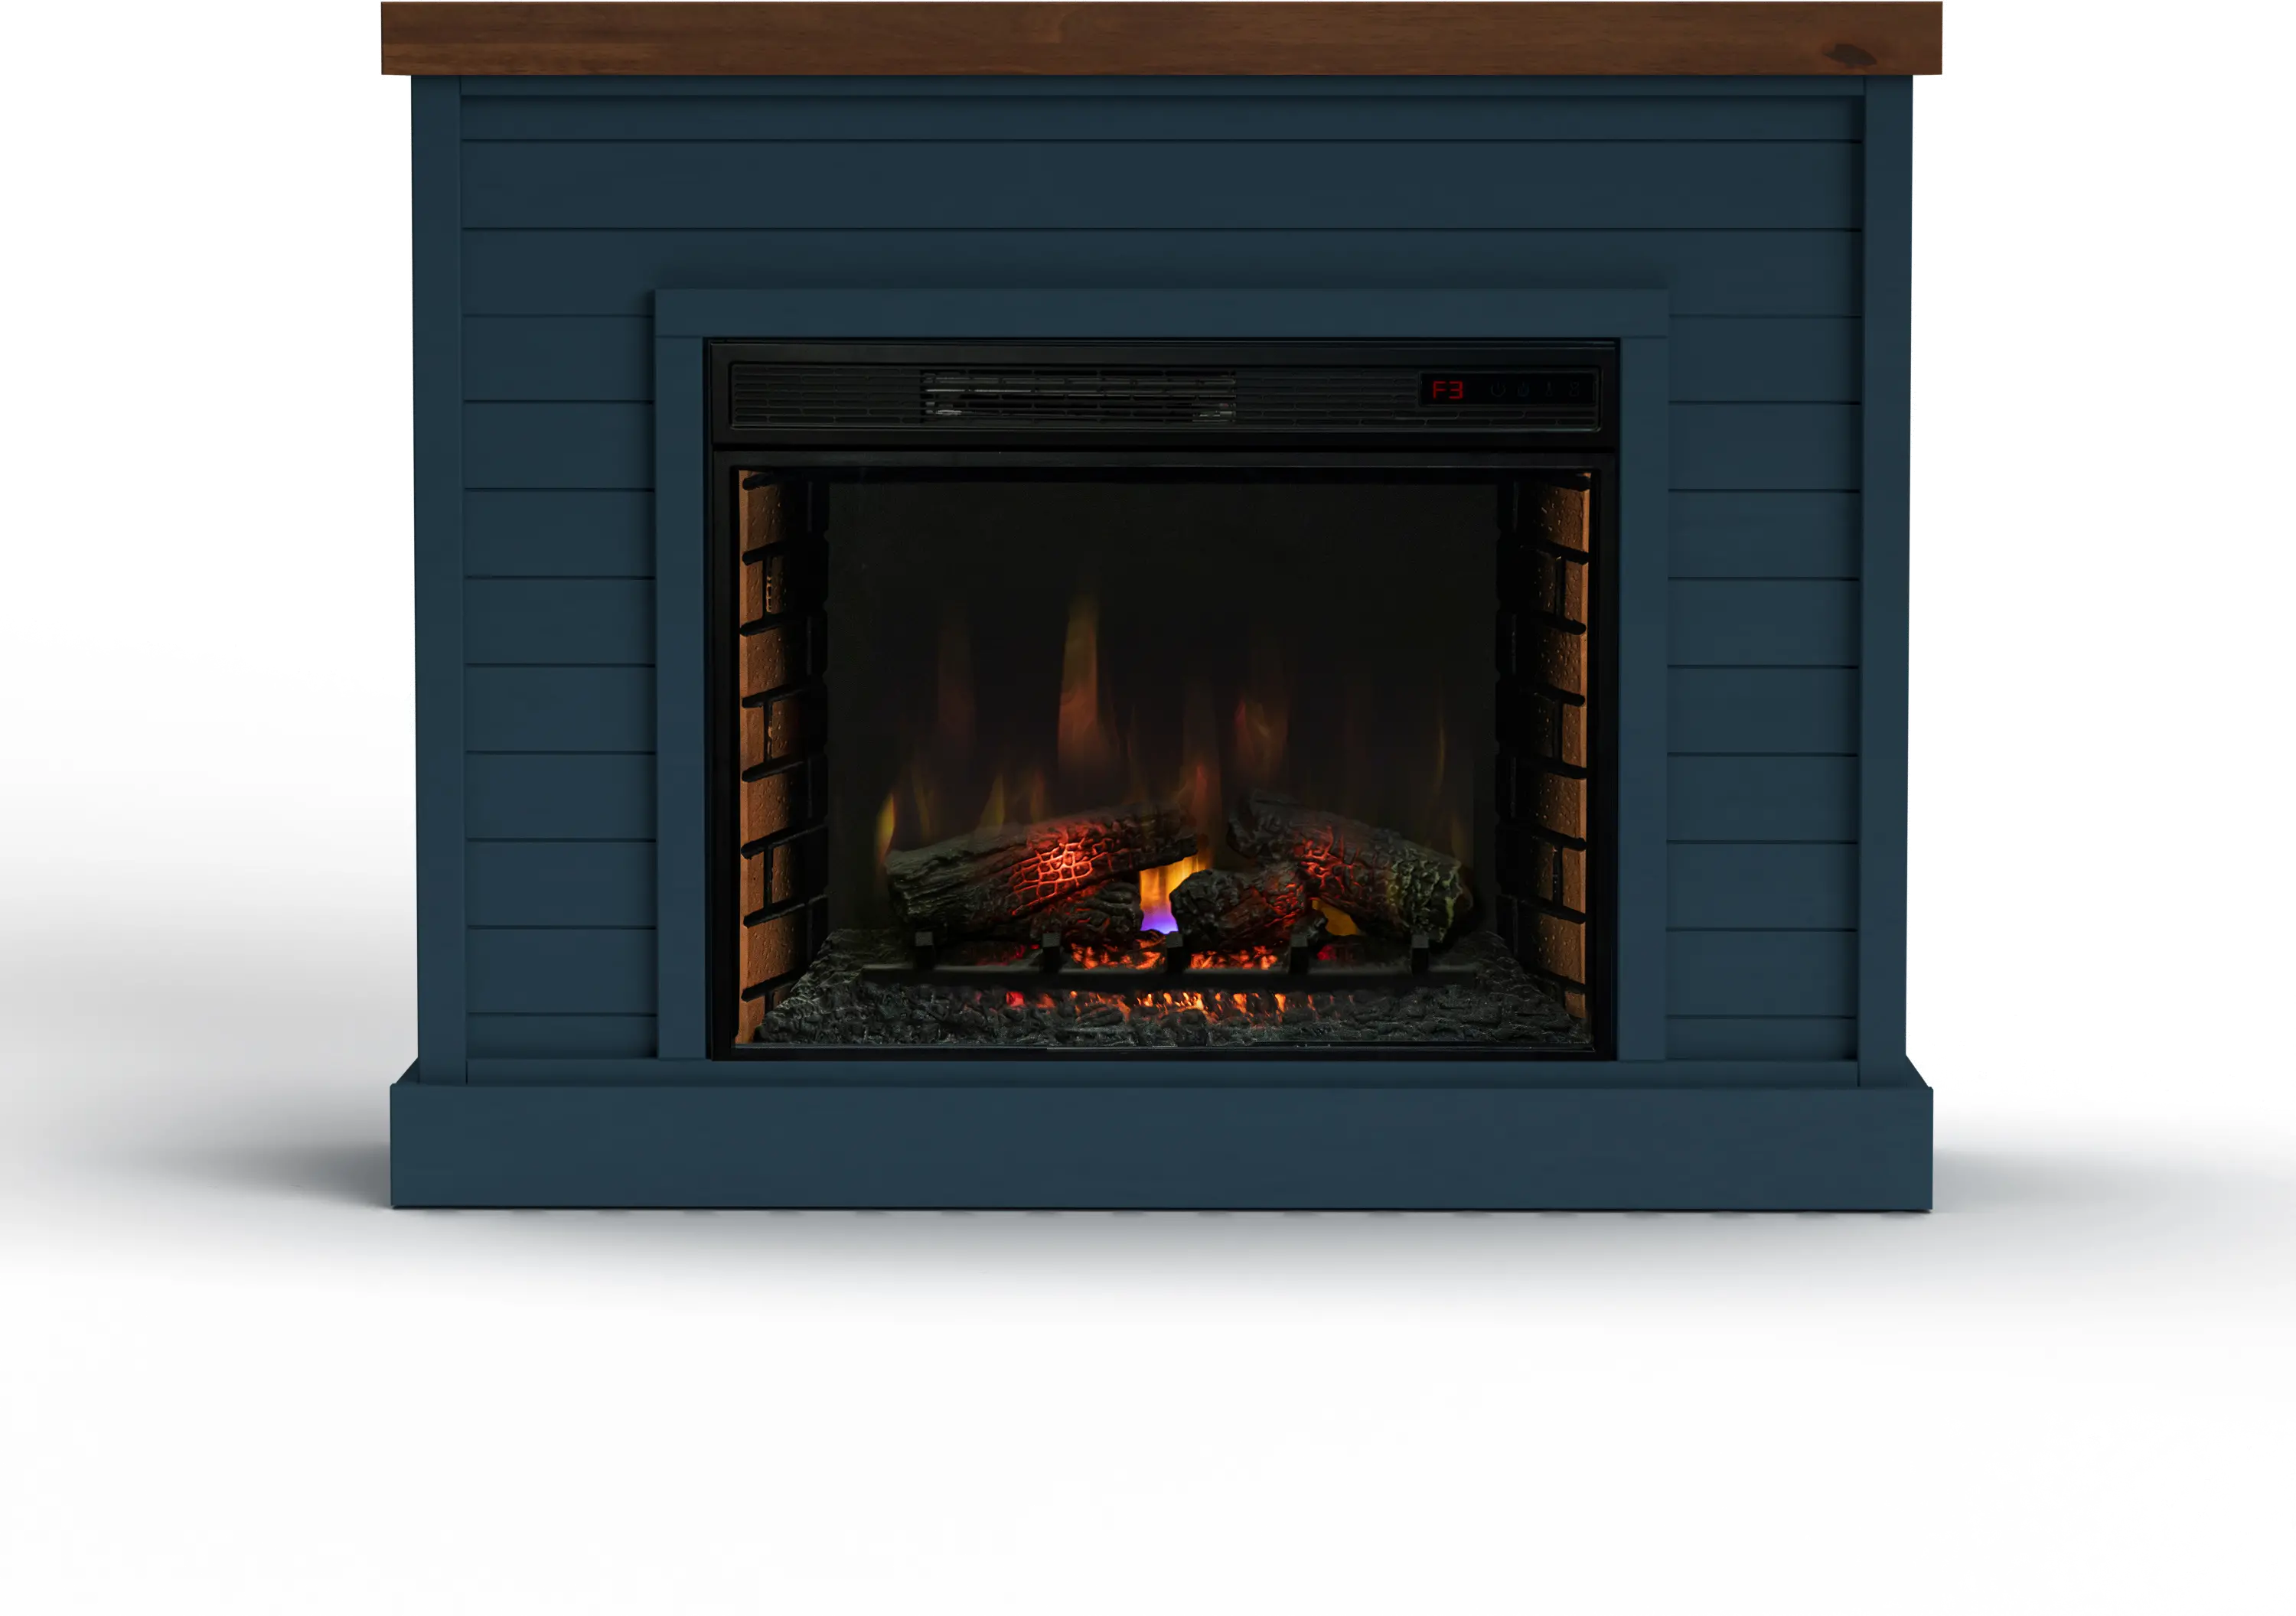 Washington Blue 48" Fireplace Mantle